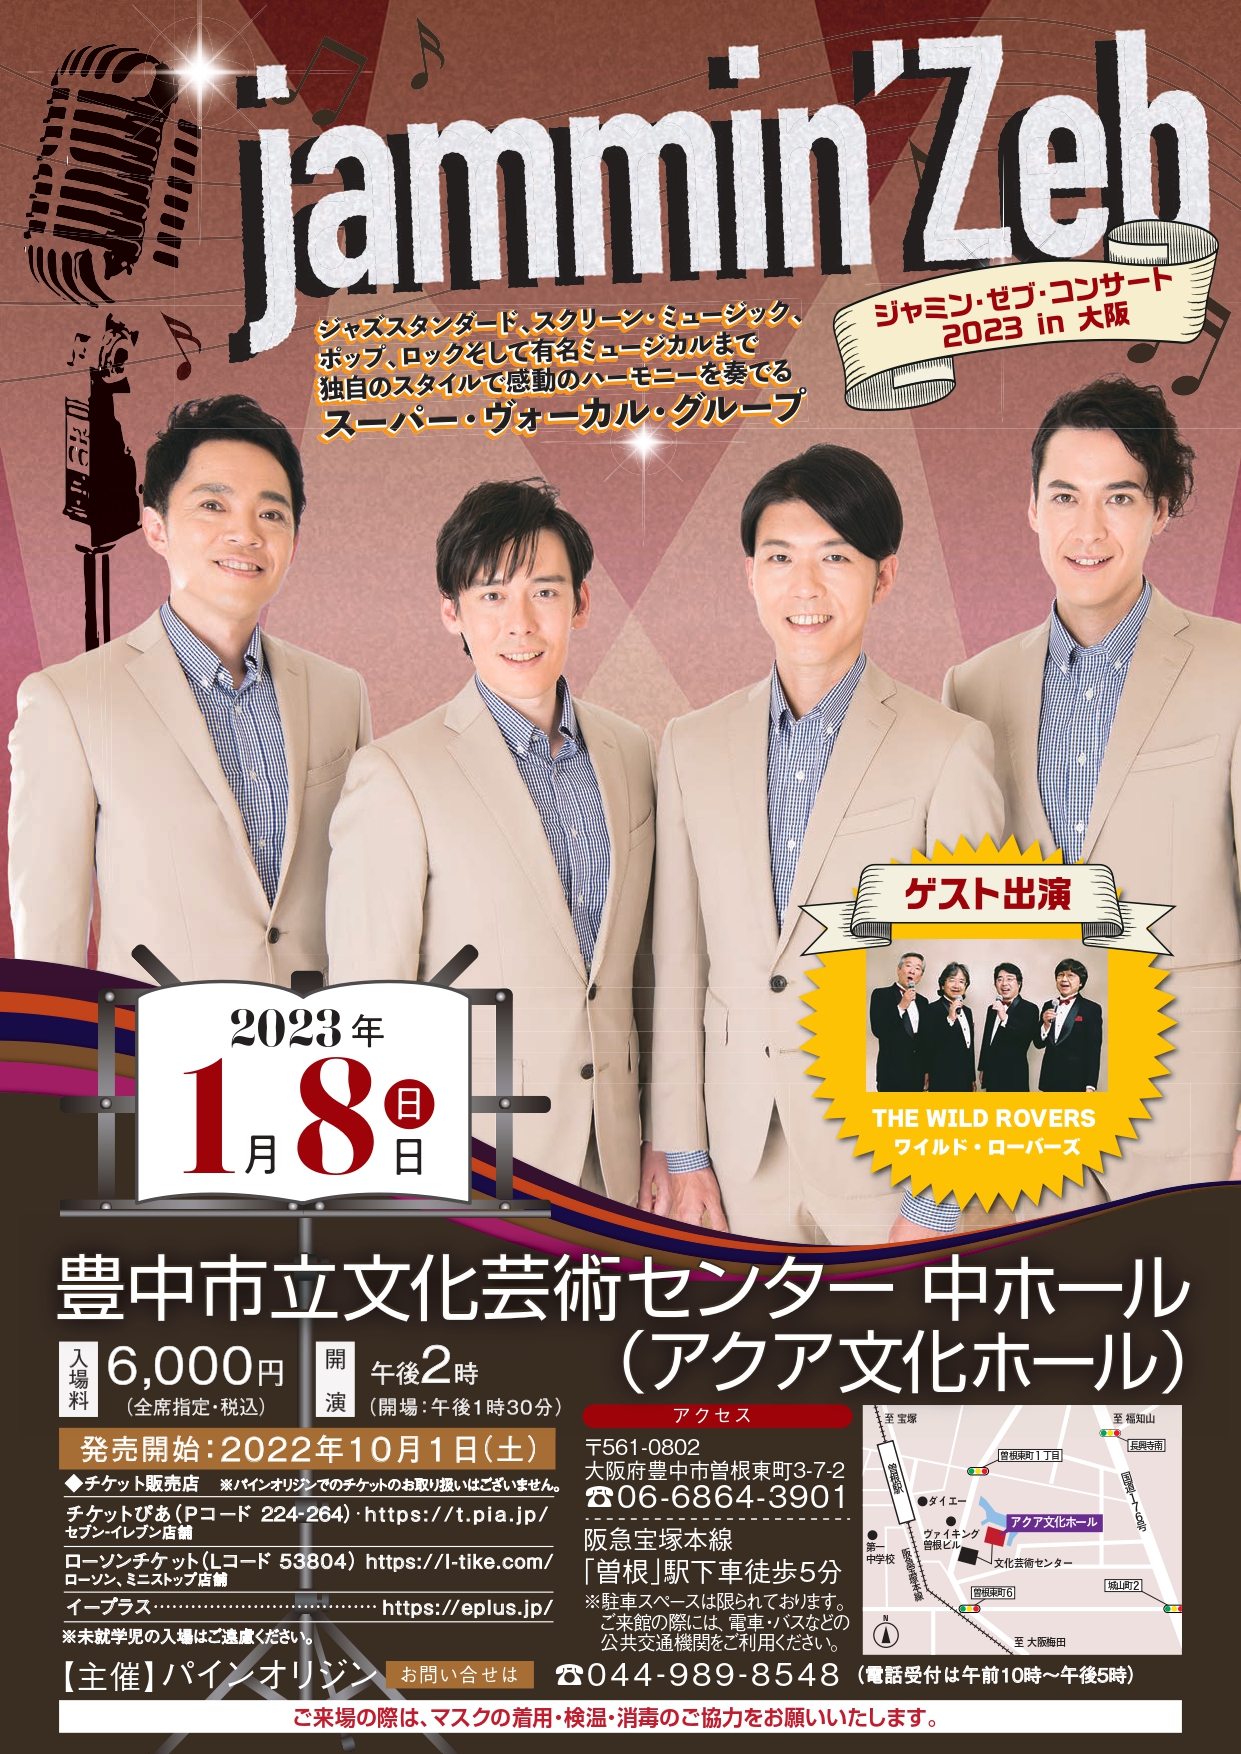 ジャミン・ゼブコンサート 2023 in 大阪